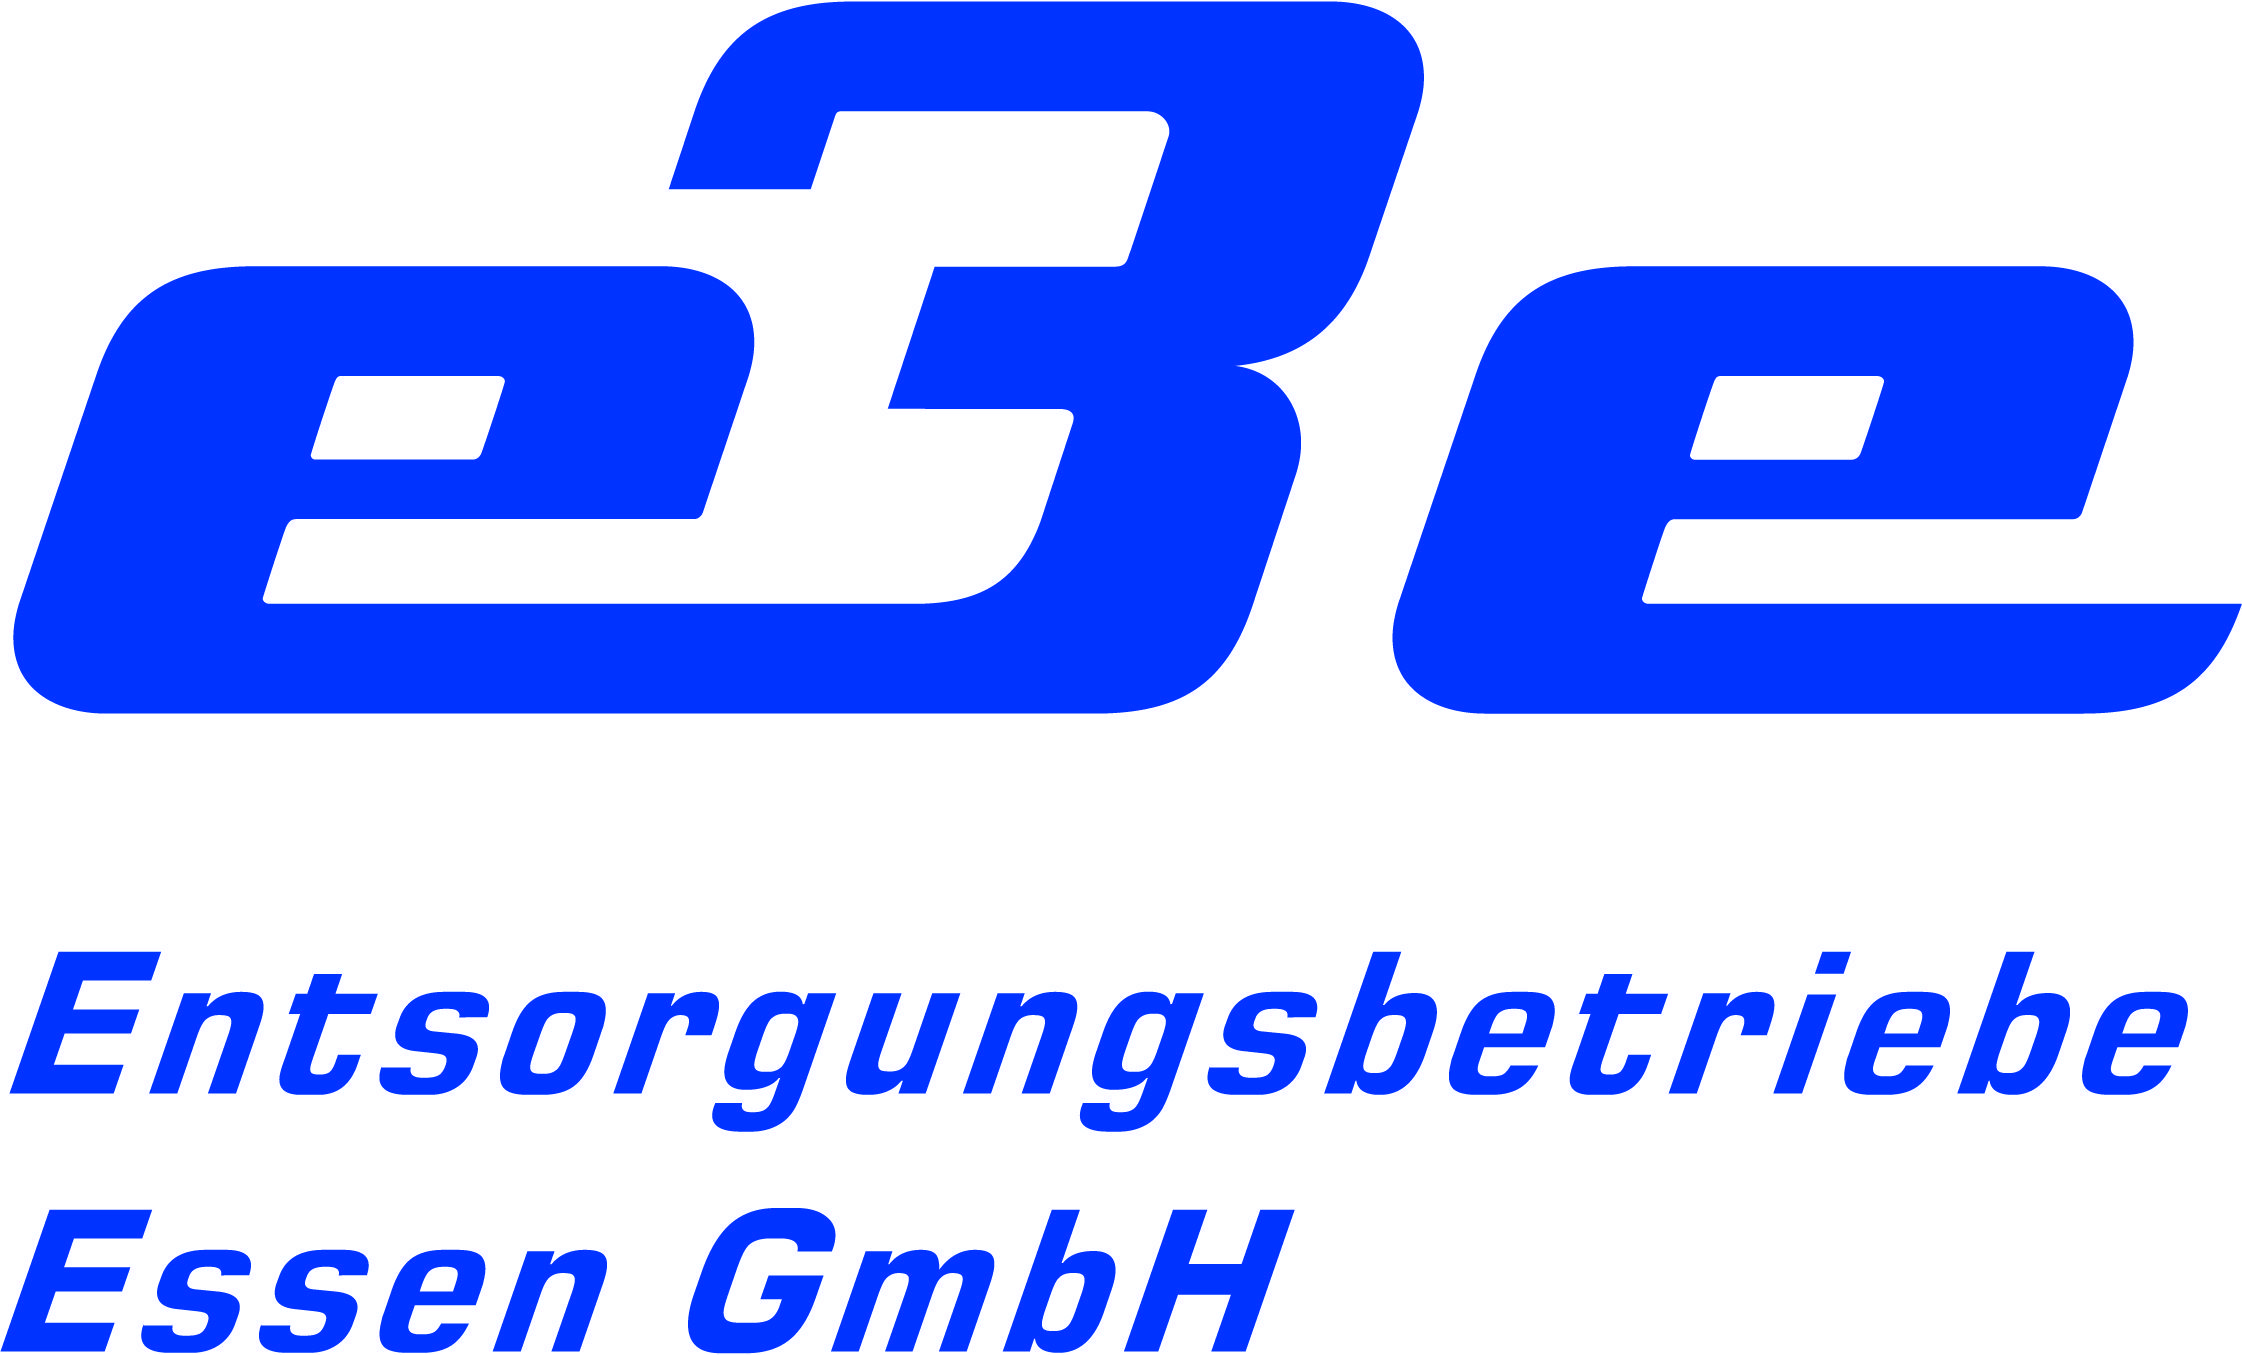 Entsorgungsbetriebe Essen GmbH